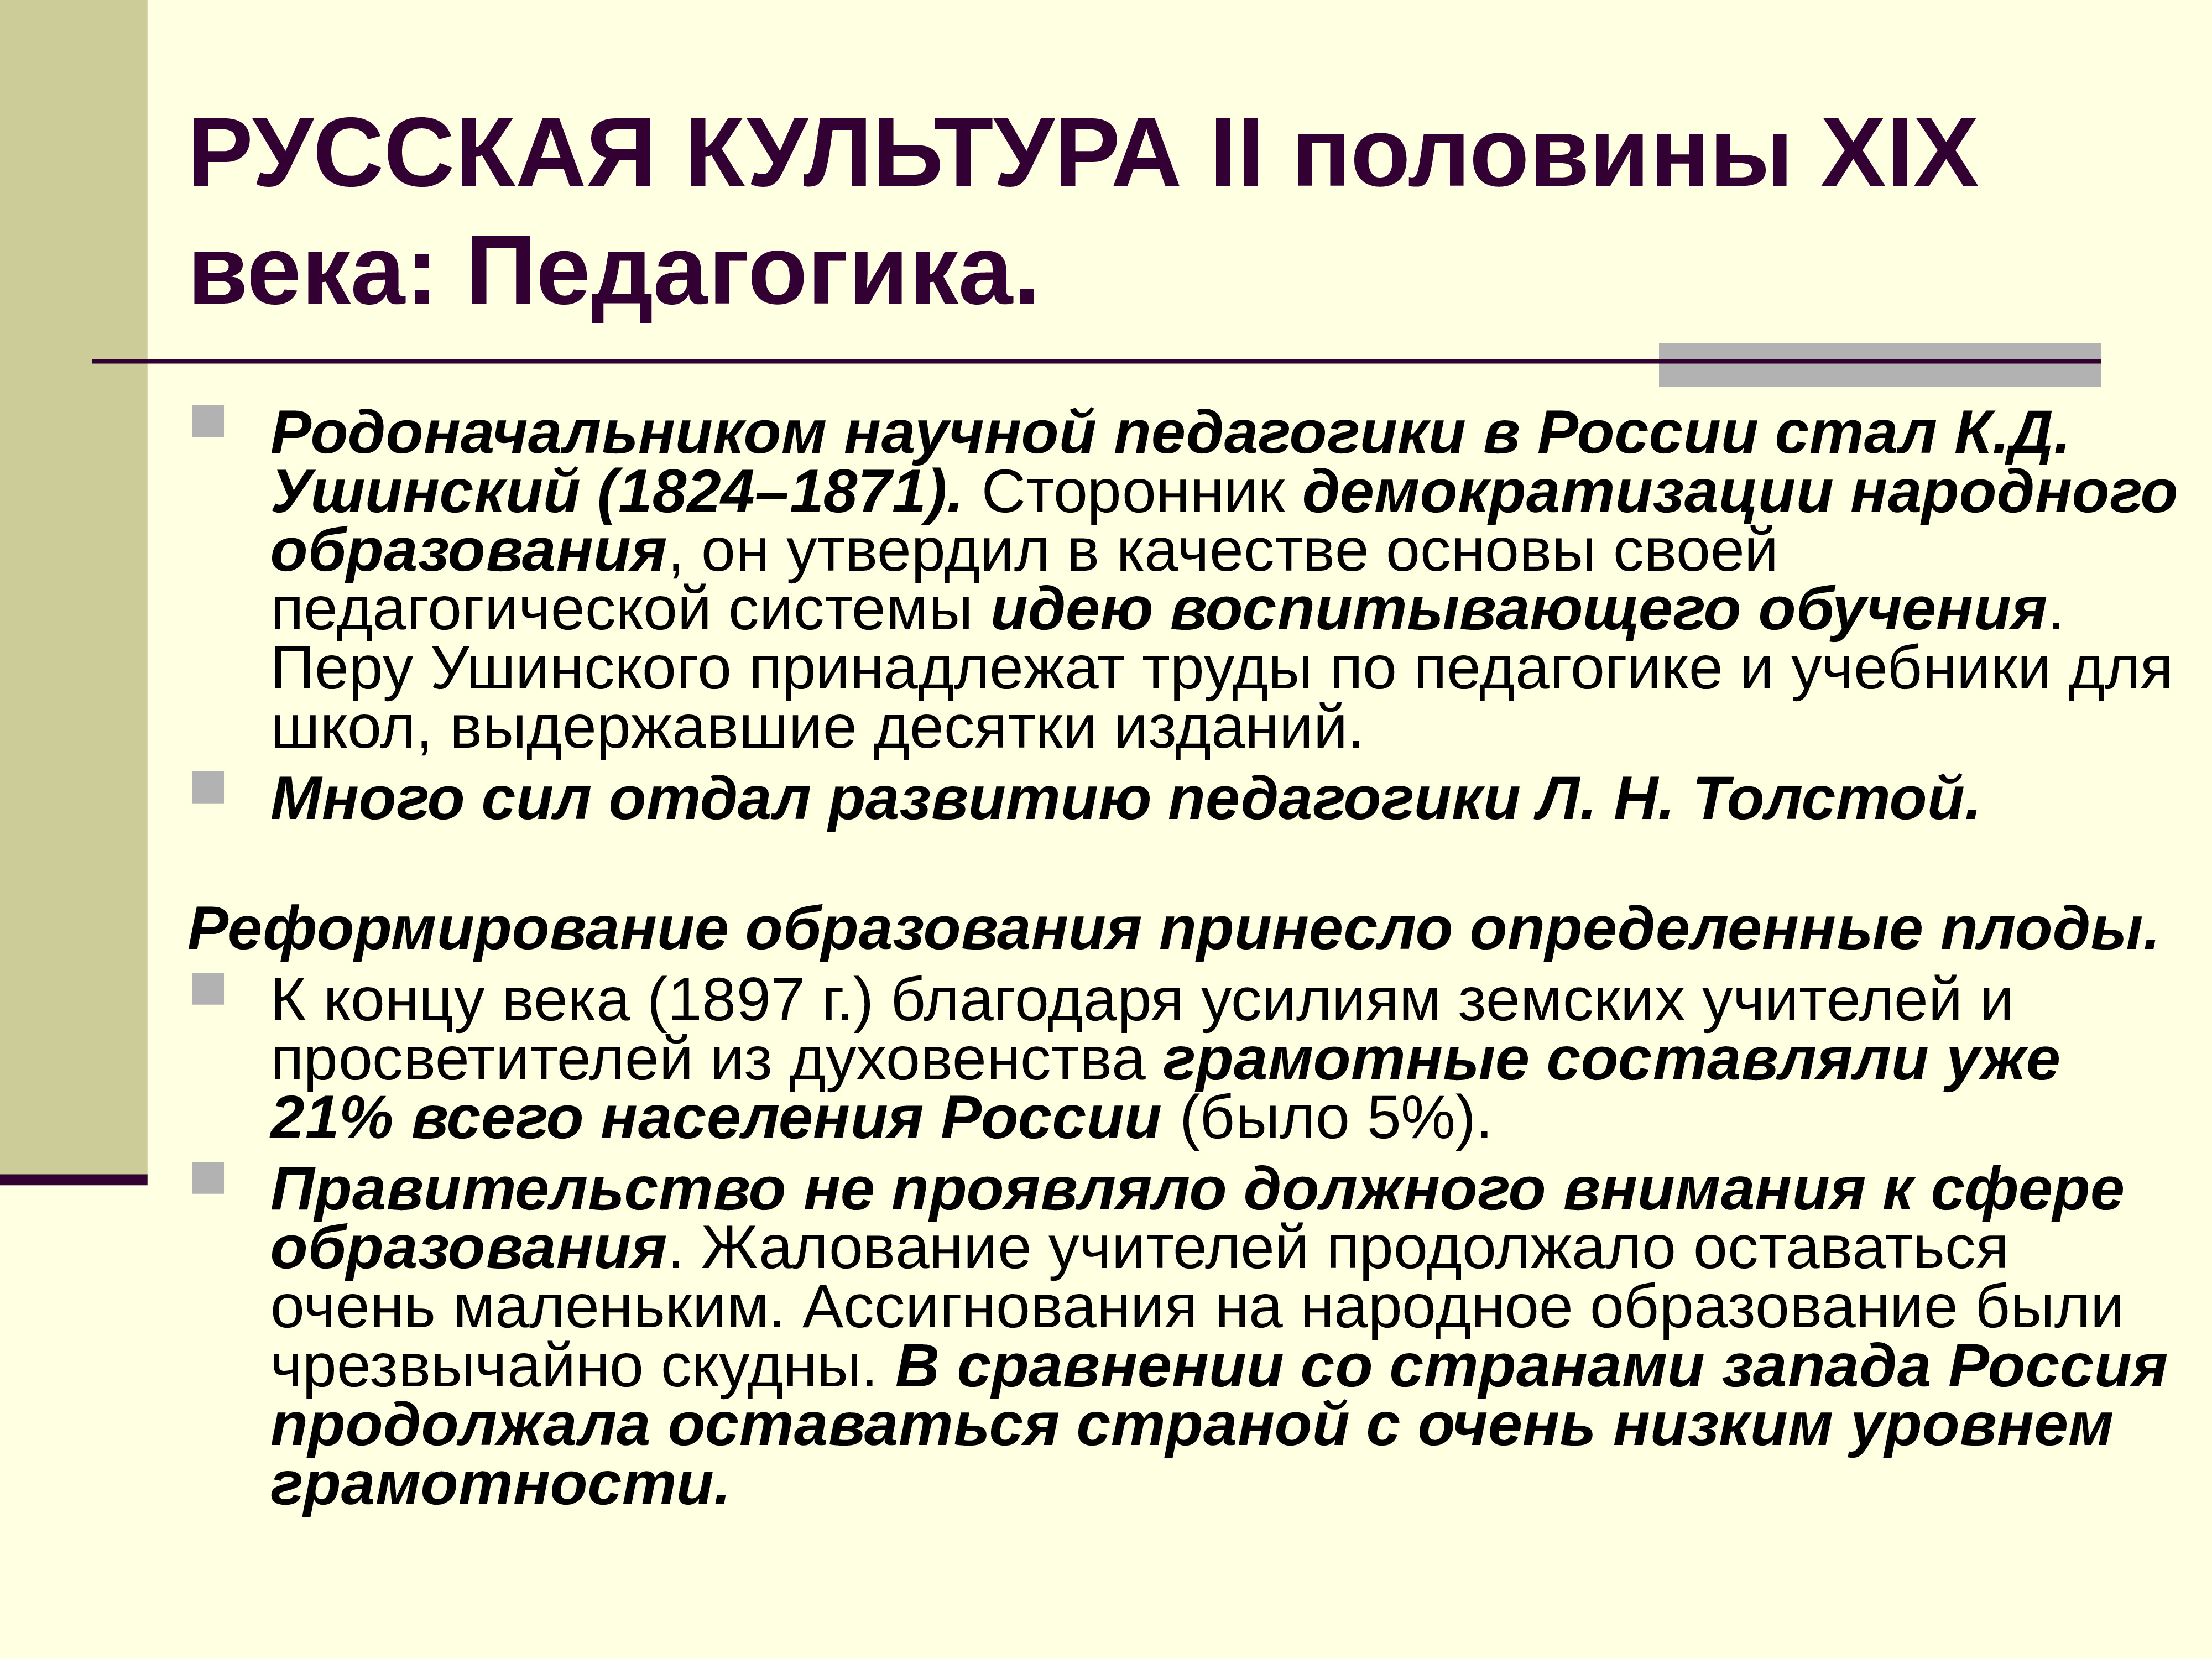 Контрольная работа по истории наука и образование россии в xix - начале хх в. 9 класс